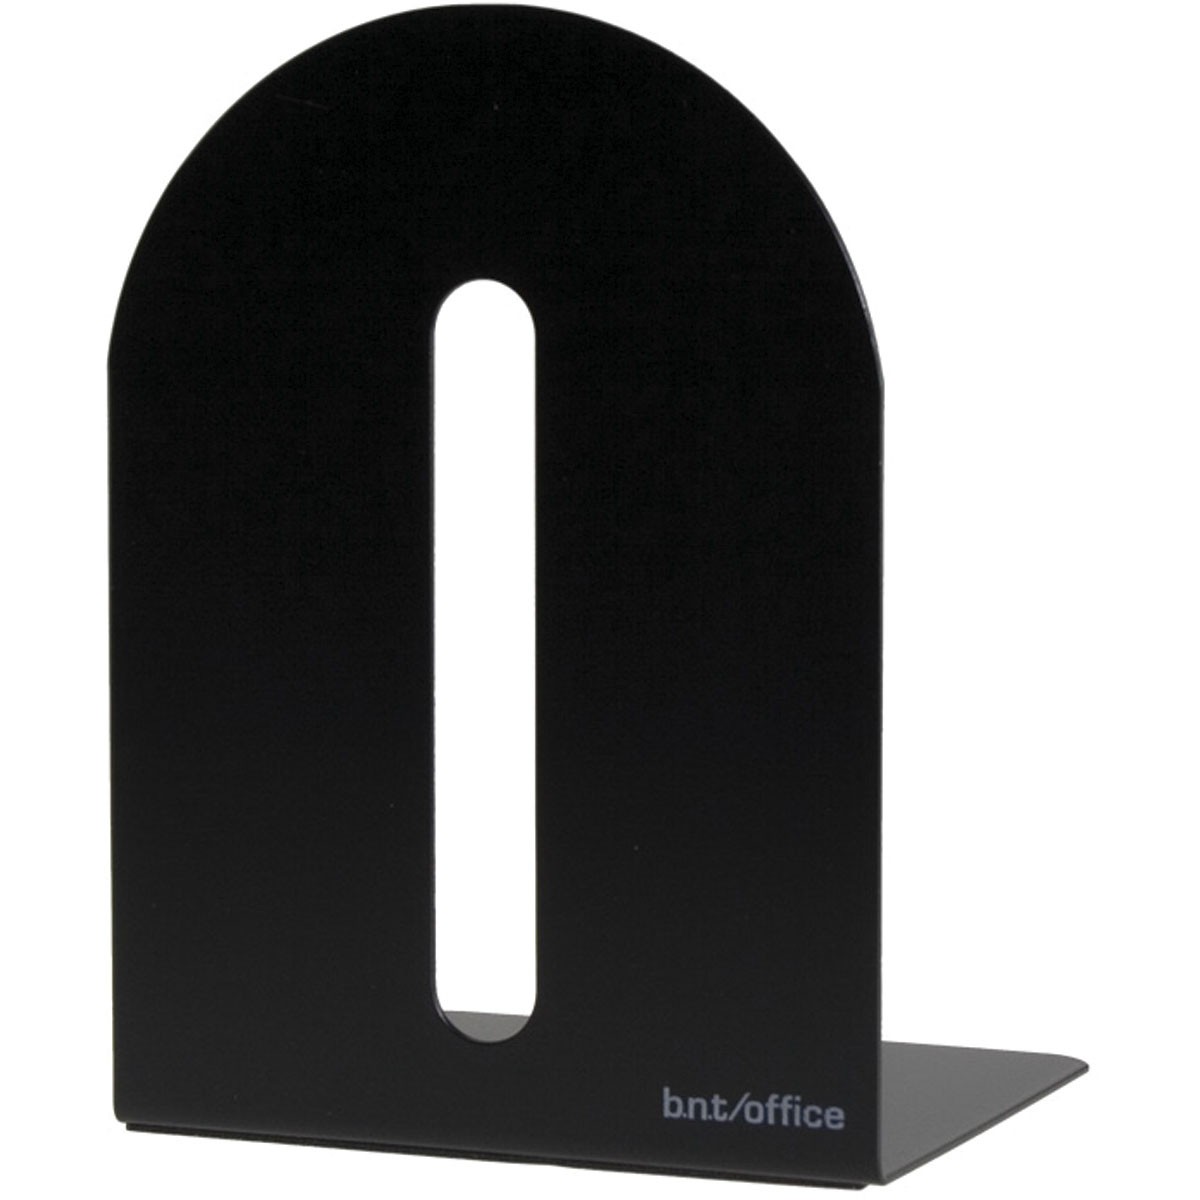 BNT bogstøtte i sort metal med en højde på 20 cm